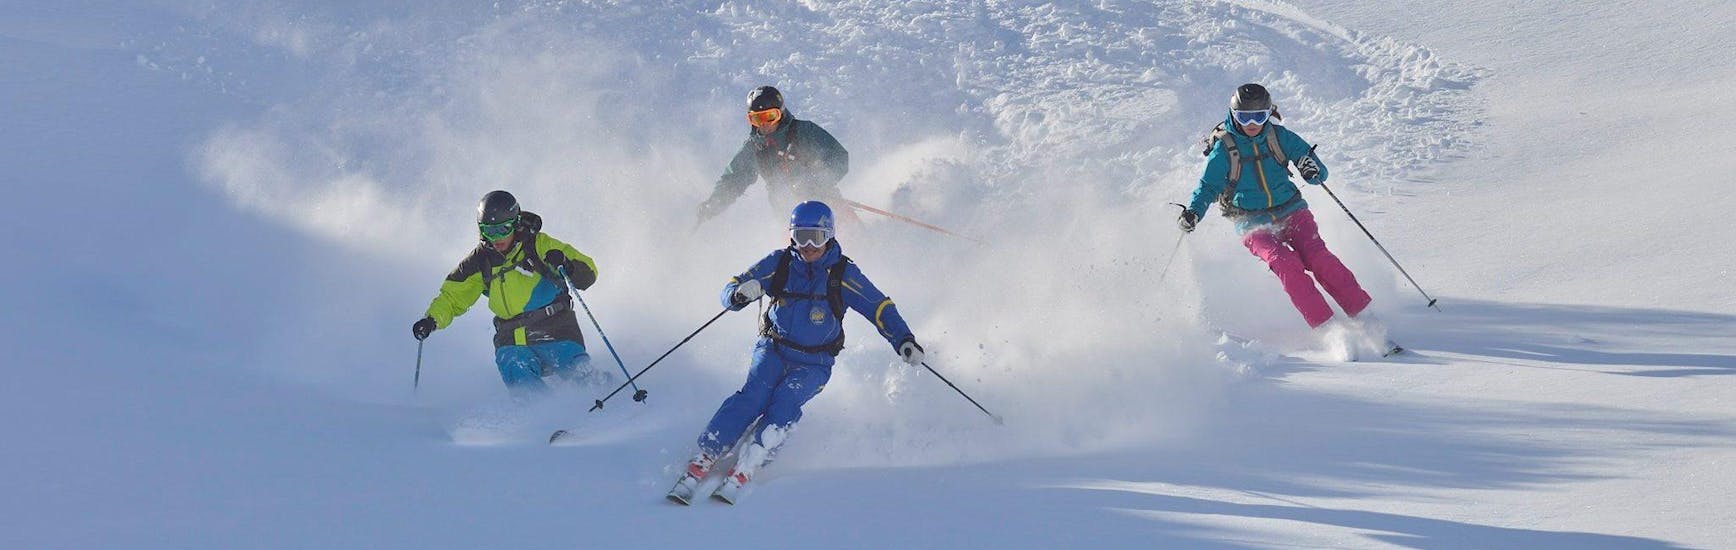 Cours de ski Adultes pour Tous Niveaux.